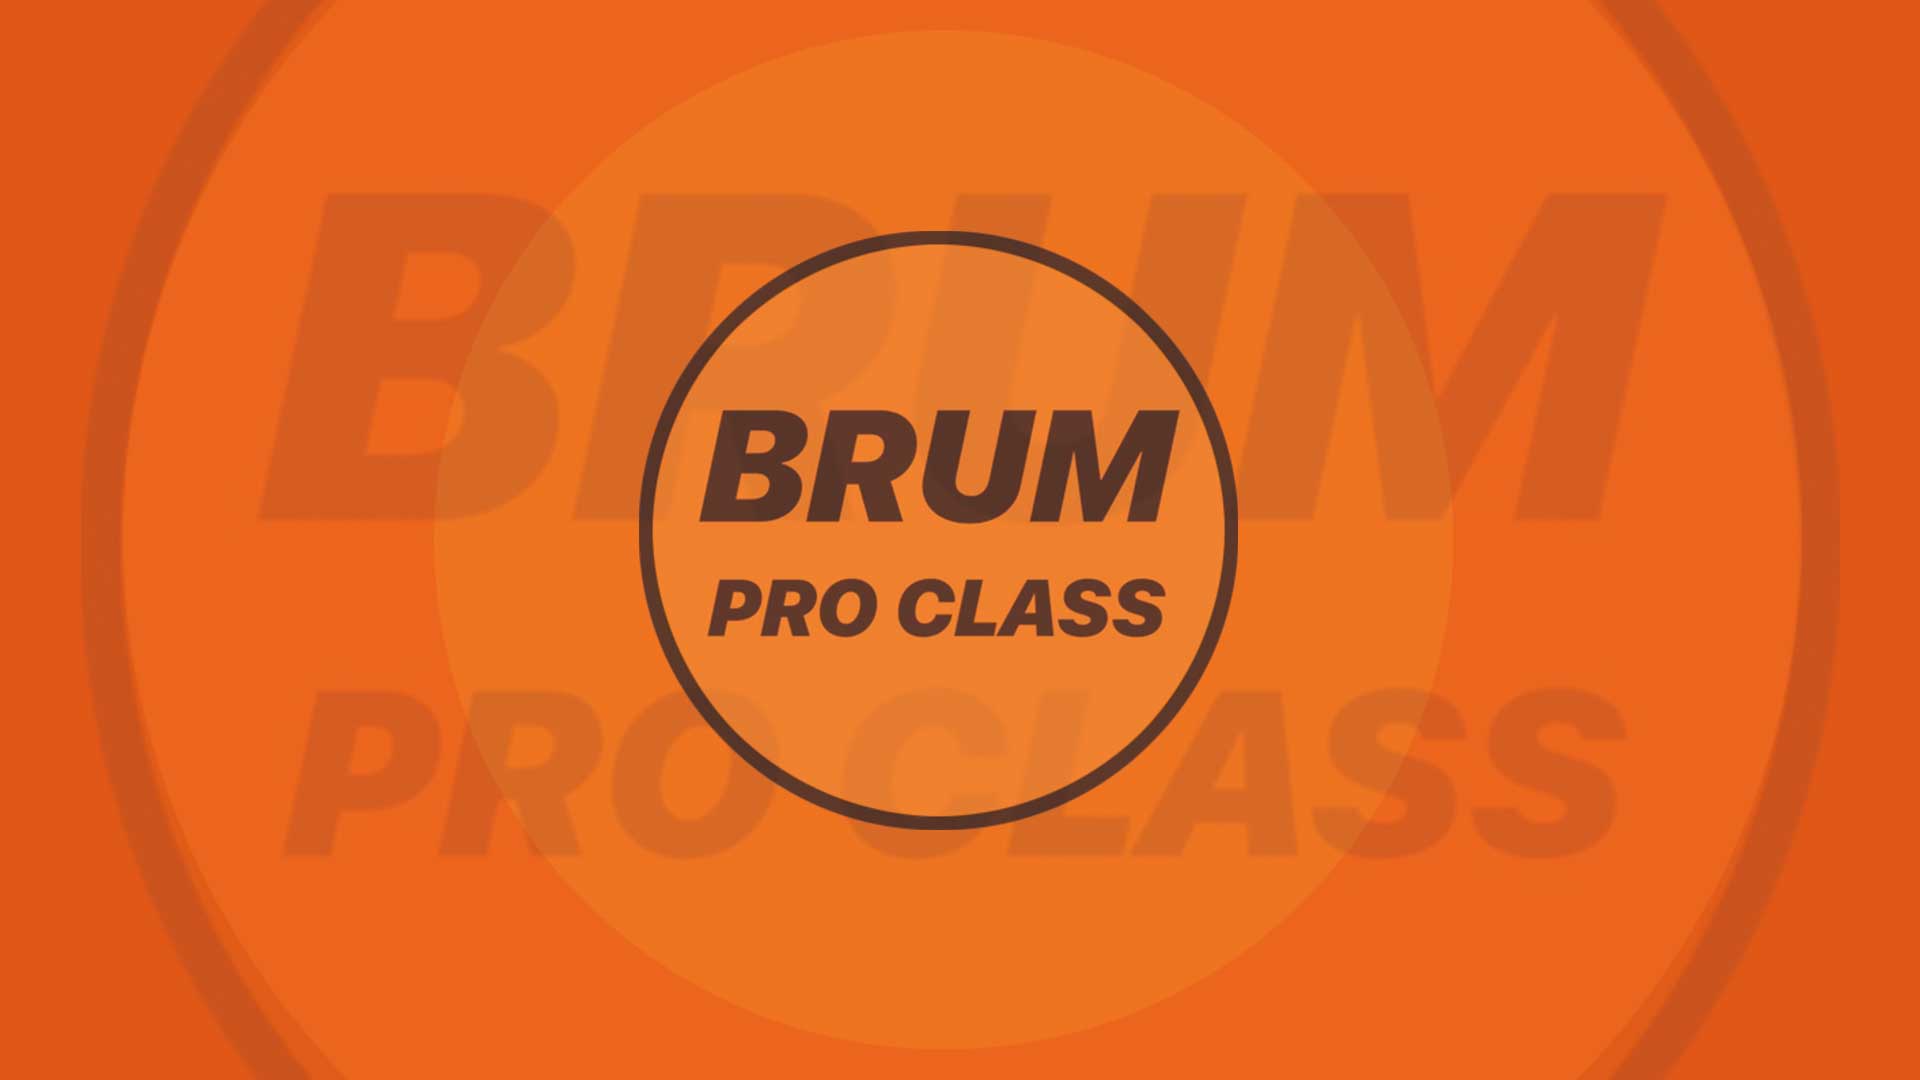 23 Mar 2023 – 10:00 @ ACE Dance & Music Brum Pro Class w/ Sarah Butler